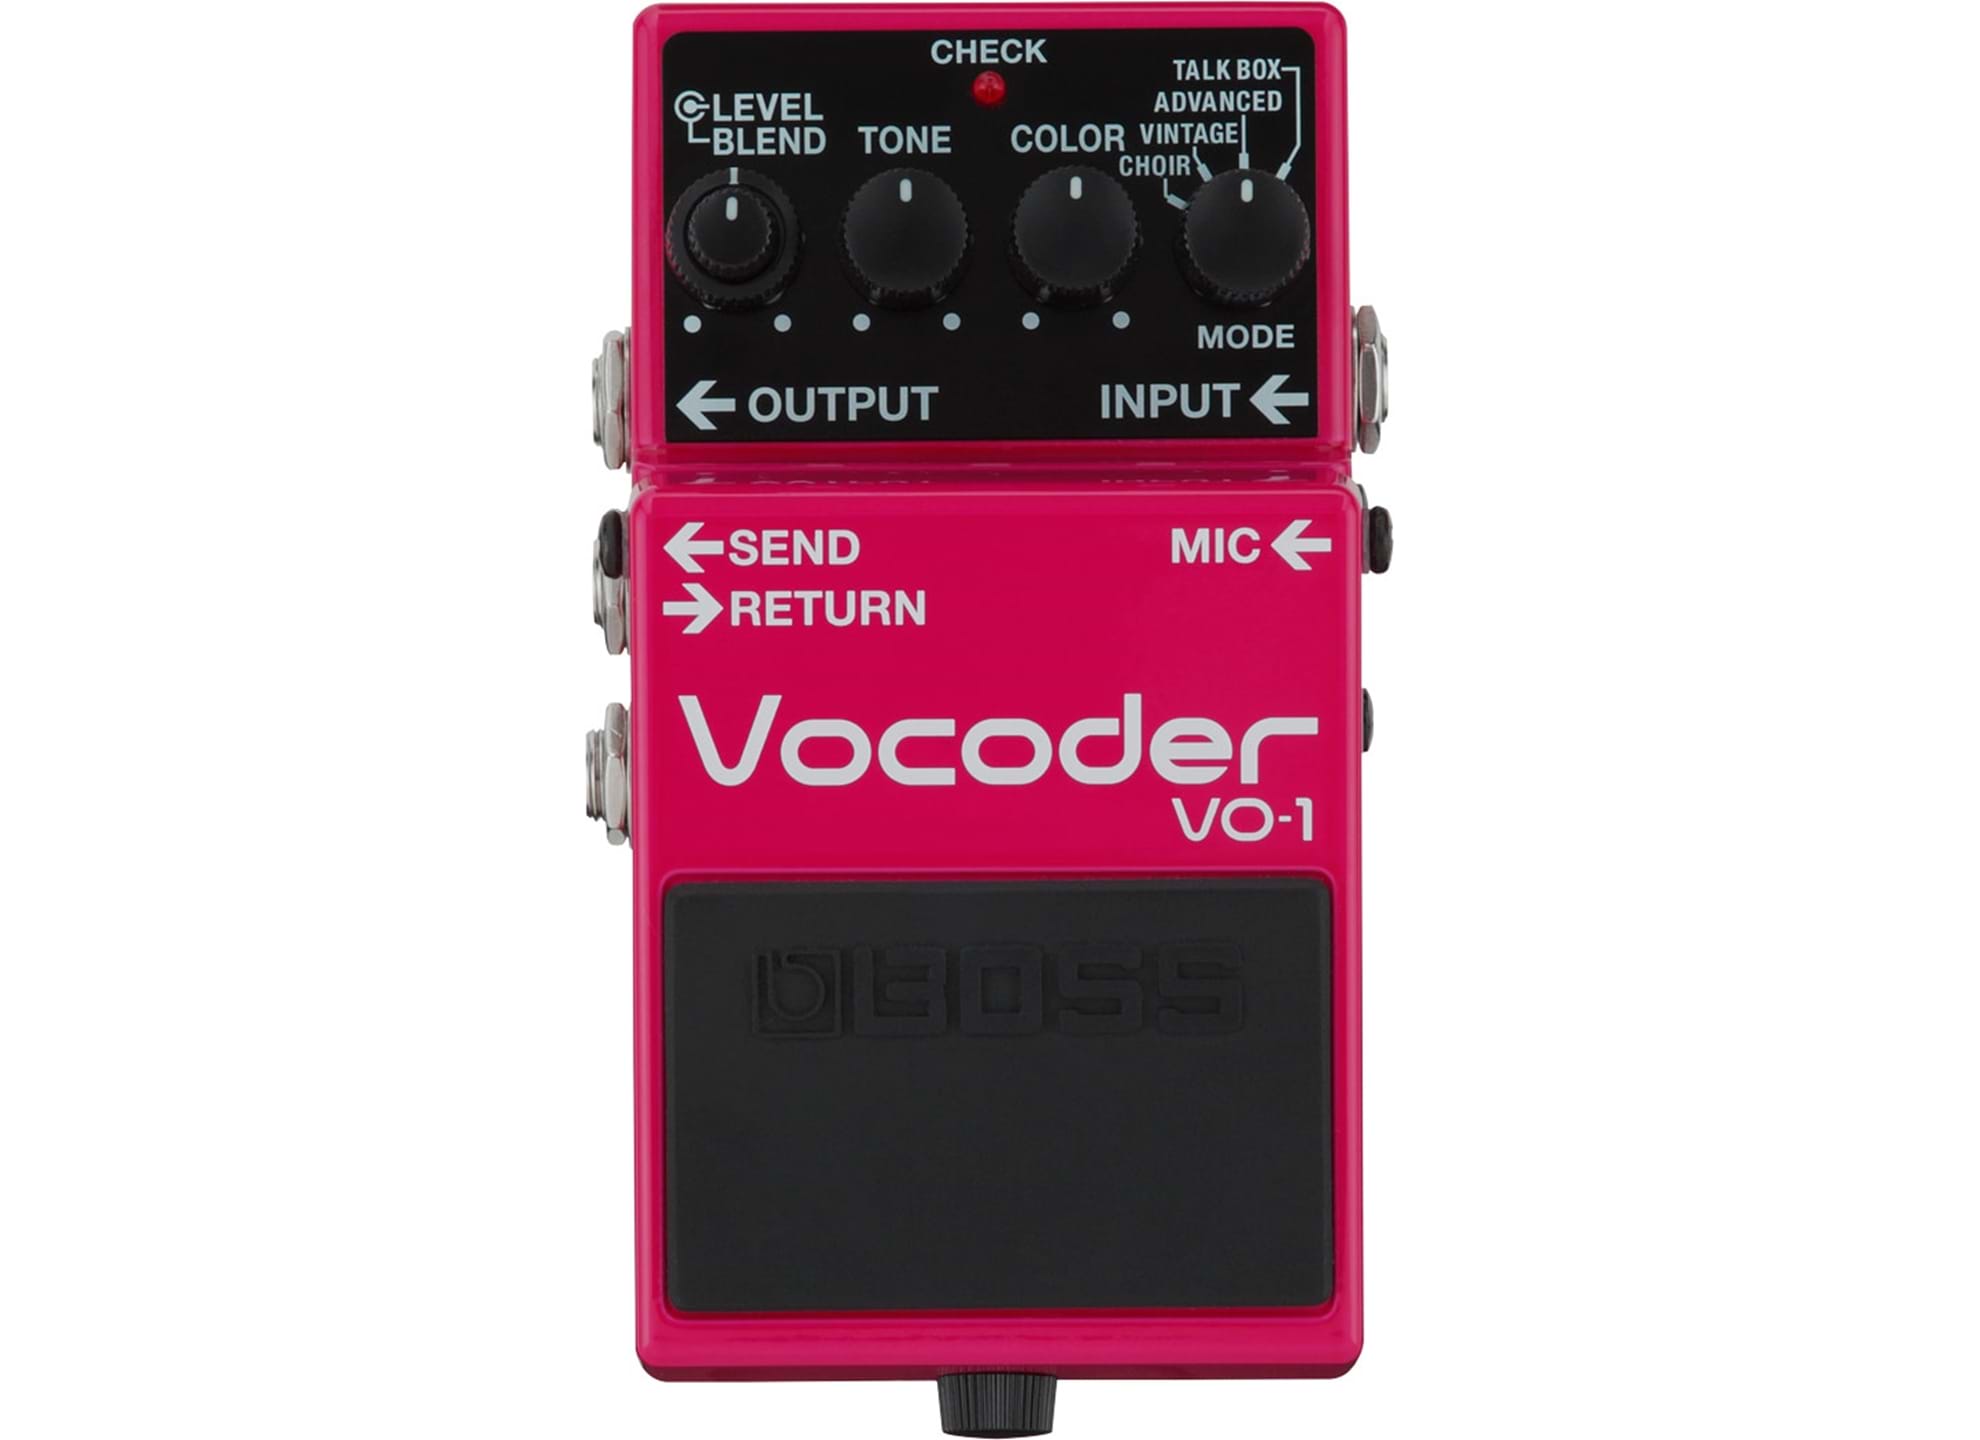 VO-1 Vocoder